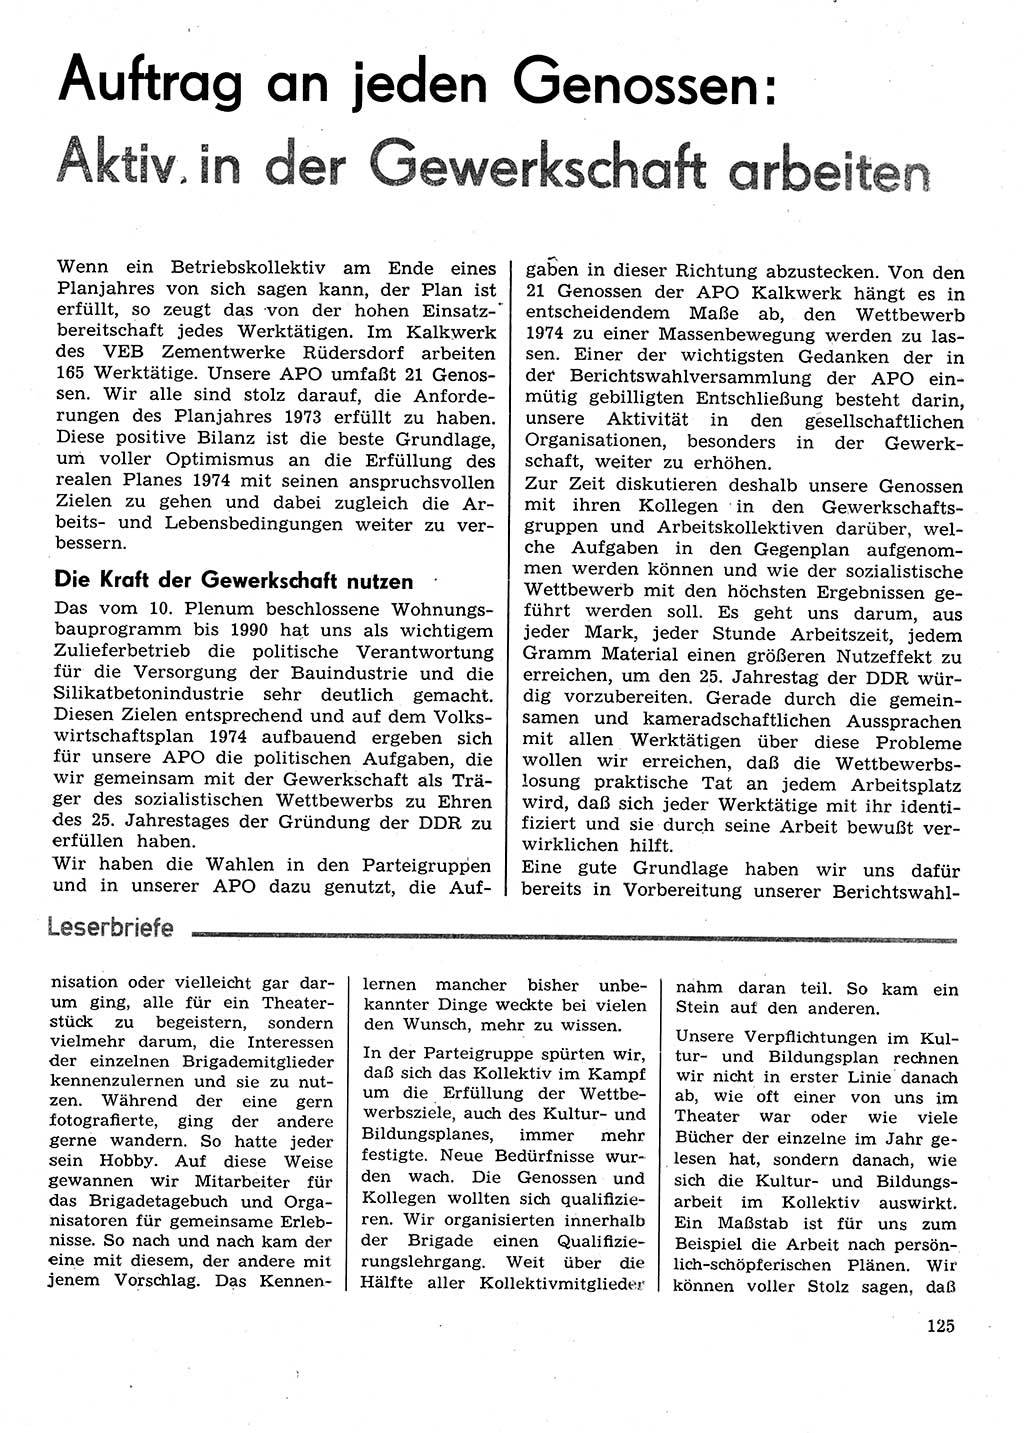 Neuer Weg (NW), Organ des Zentralkomitees (ZK) der SED (Sozialistische Einheitspartei Deutschlands) für Fragen des Parteilebens, 29. Jahrgang [Deutsche Demokratische Republik (DDR)] 1974, Seite 125 (NW ZK SED DDR 1974, S. 125)